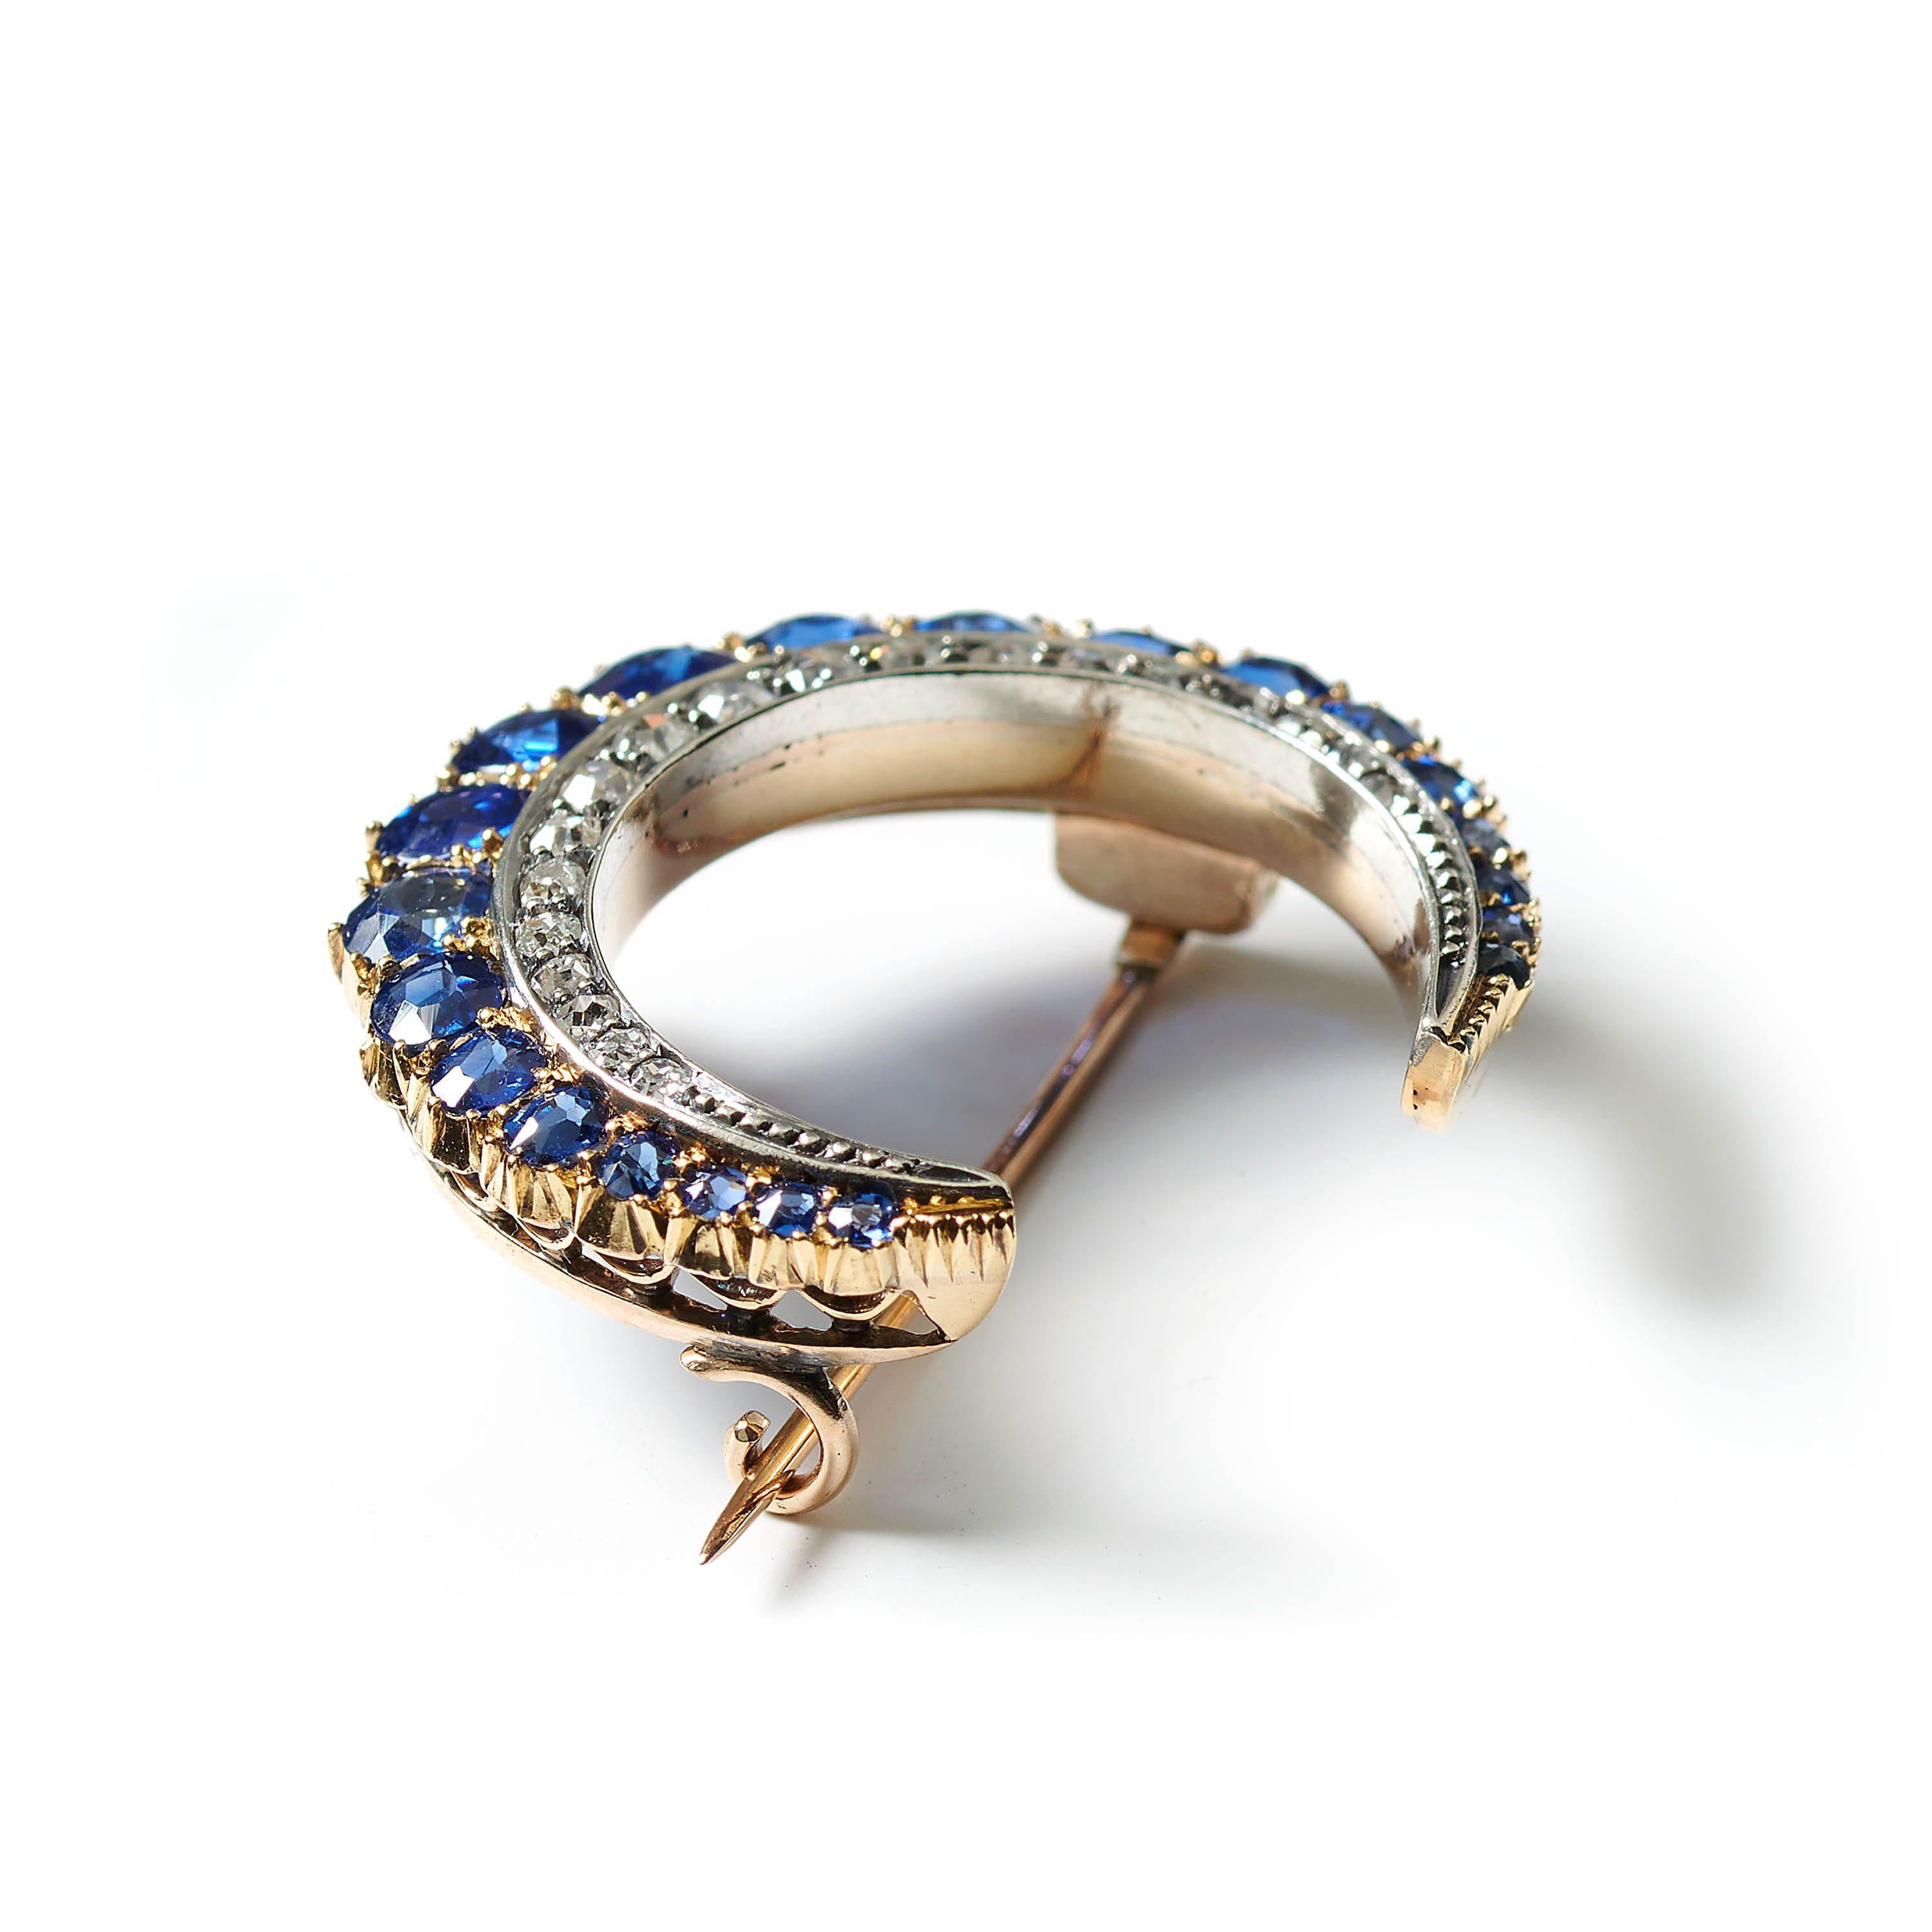 Eine antike Brosche mit Saphiren und Diamanten in Halbmondform, mit einer äußeren Reihe von ovalen und kissenförmigen, facettierten Saphiren, die von der Mitte aus verlaufend in Gold gefasst sind, in Körnern und abgeschnittenen Fassungen am äußeren